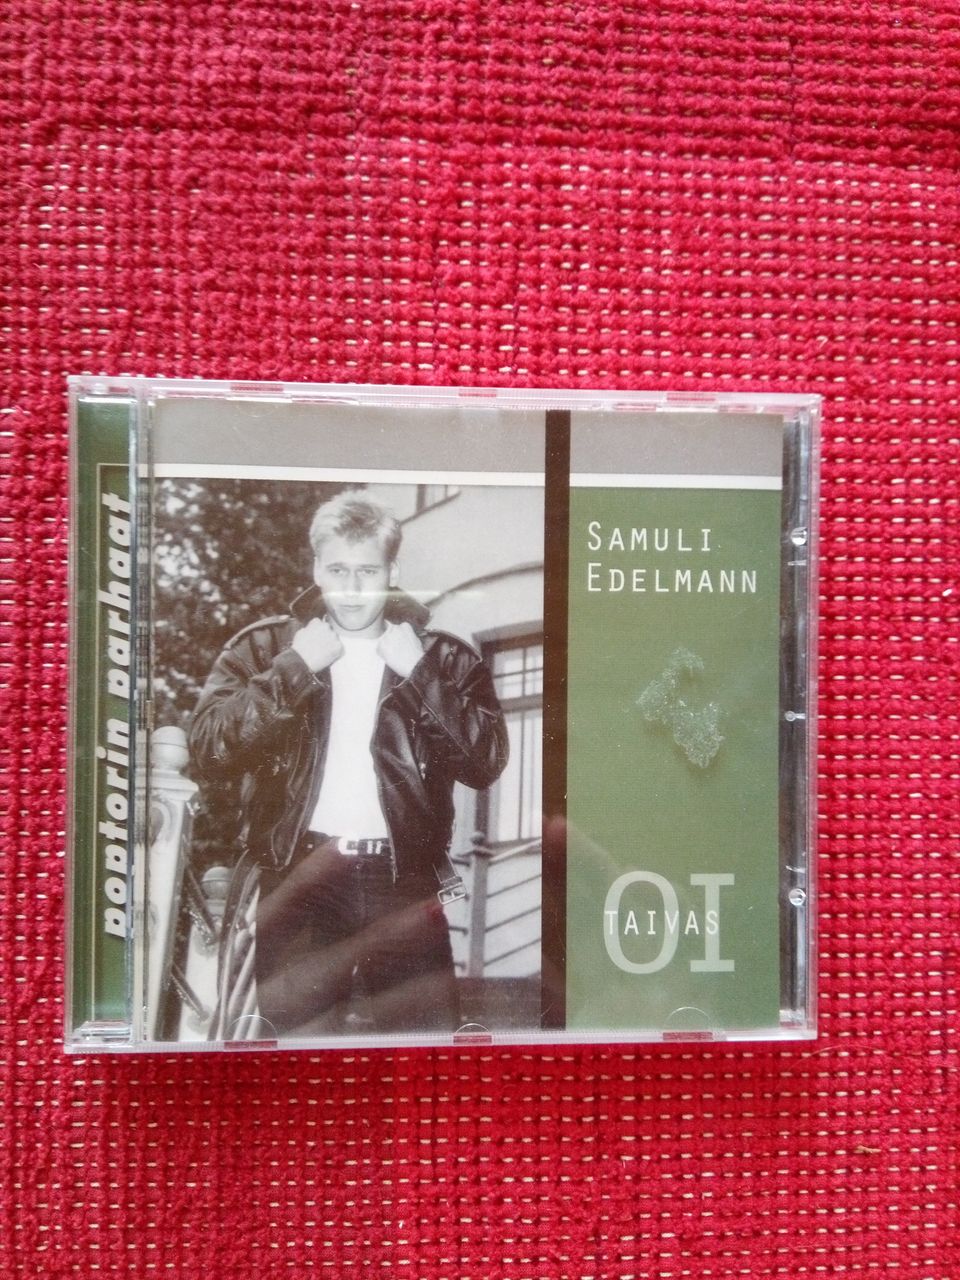 Samuli Edelmann - Oi taivas CD